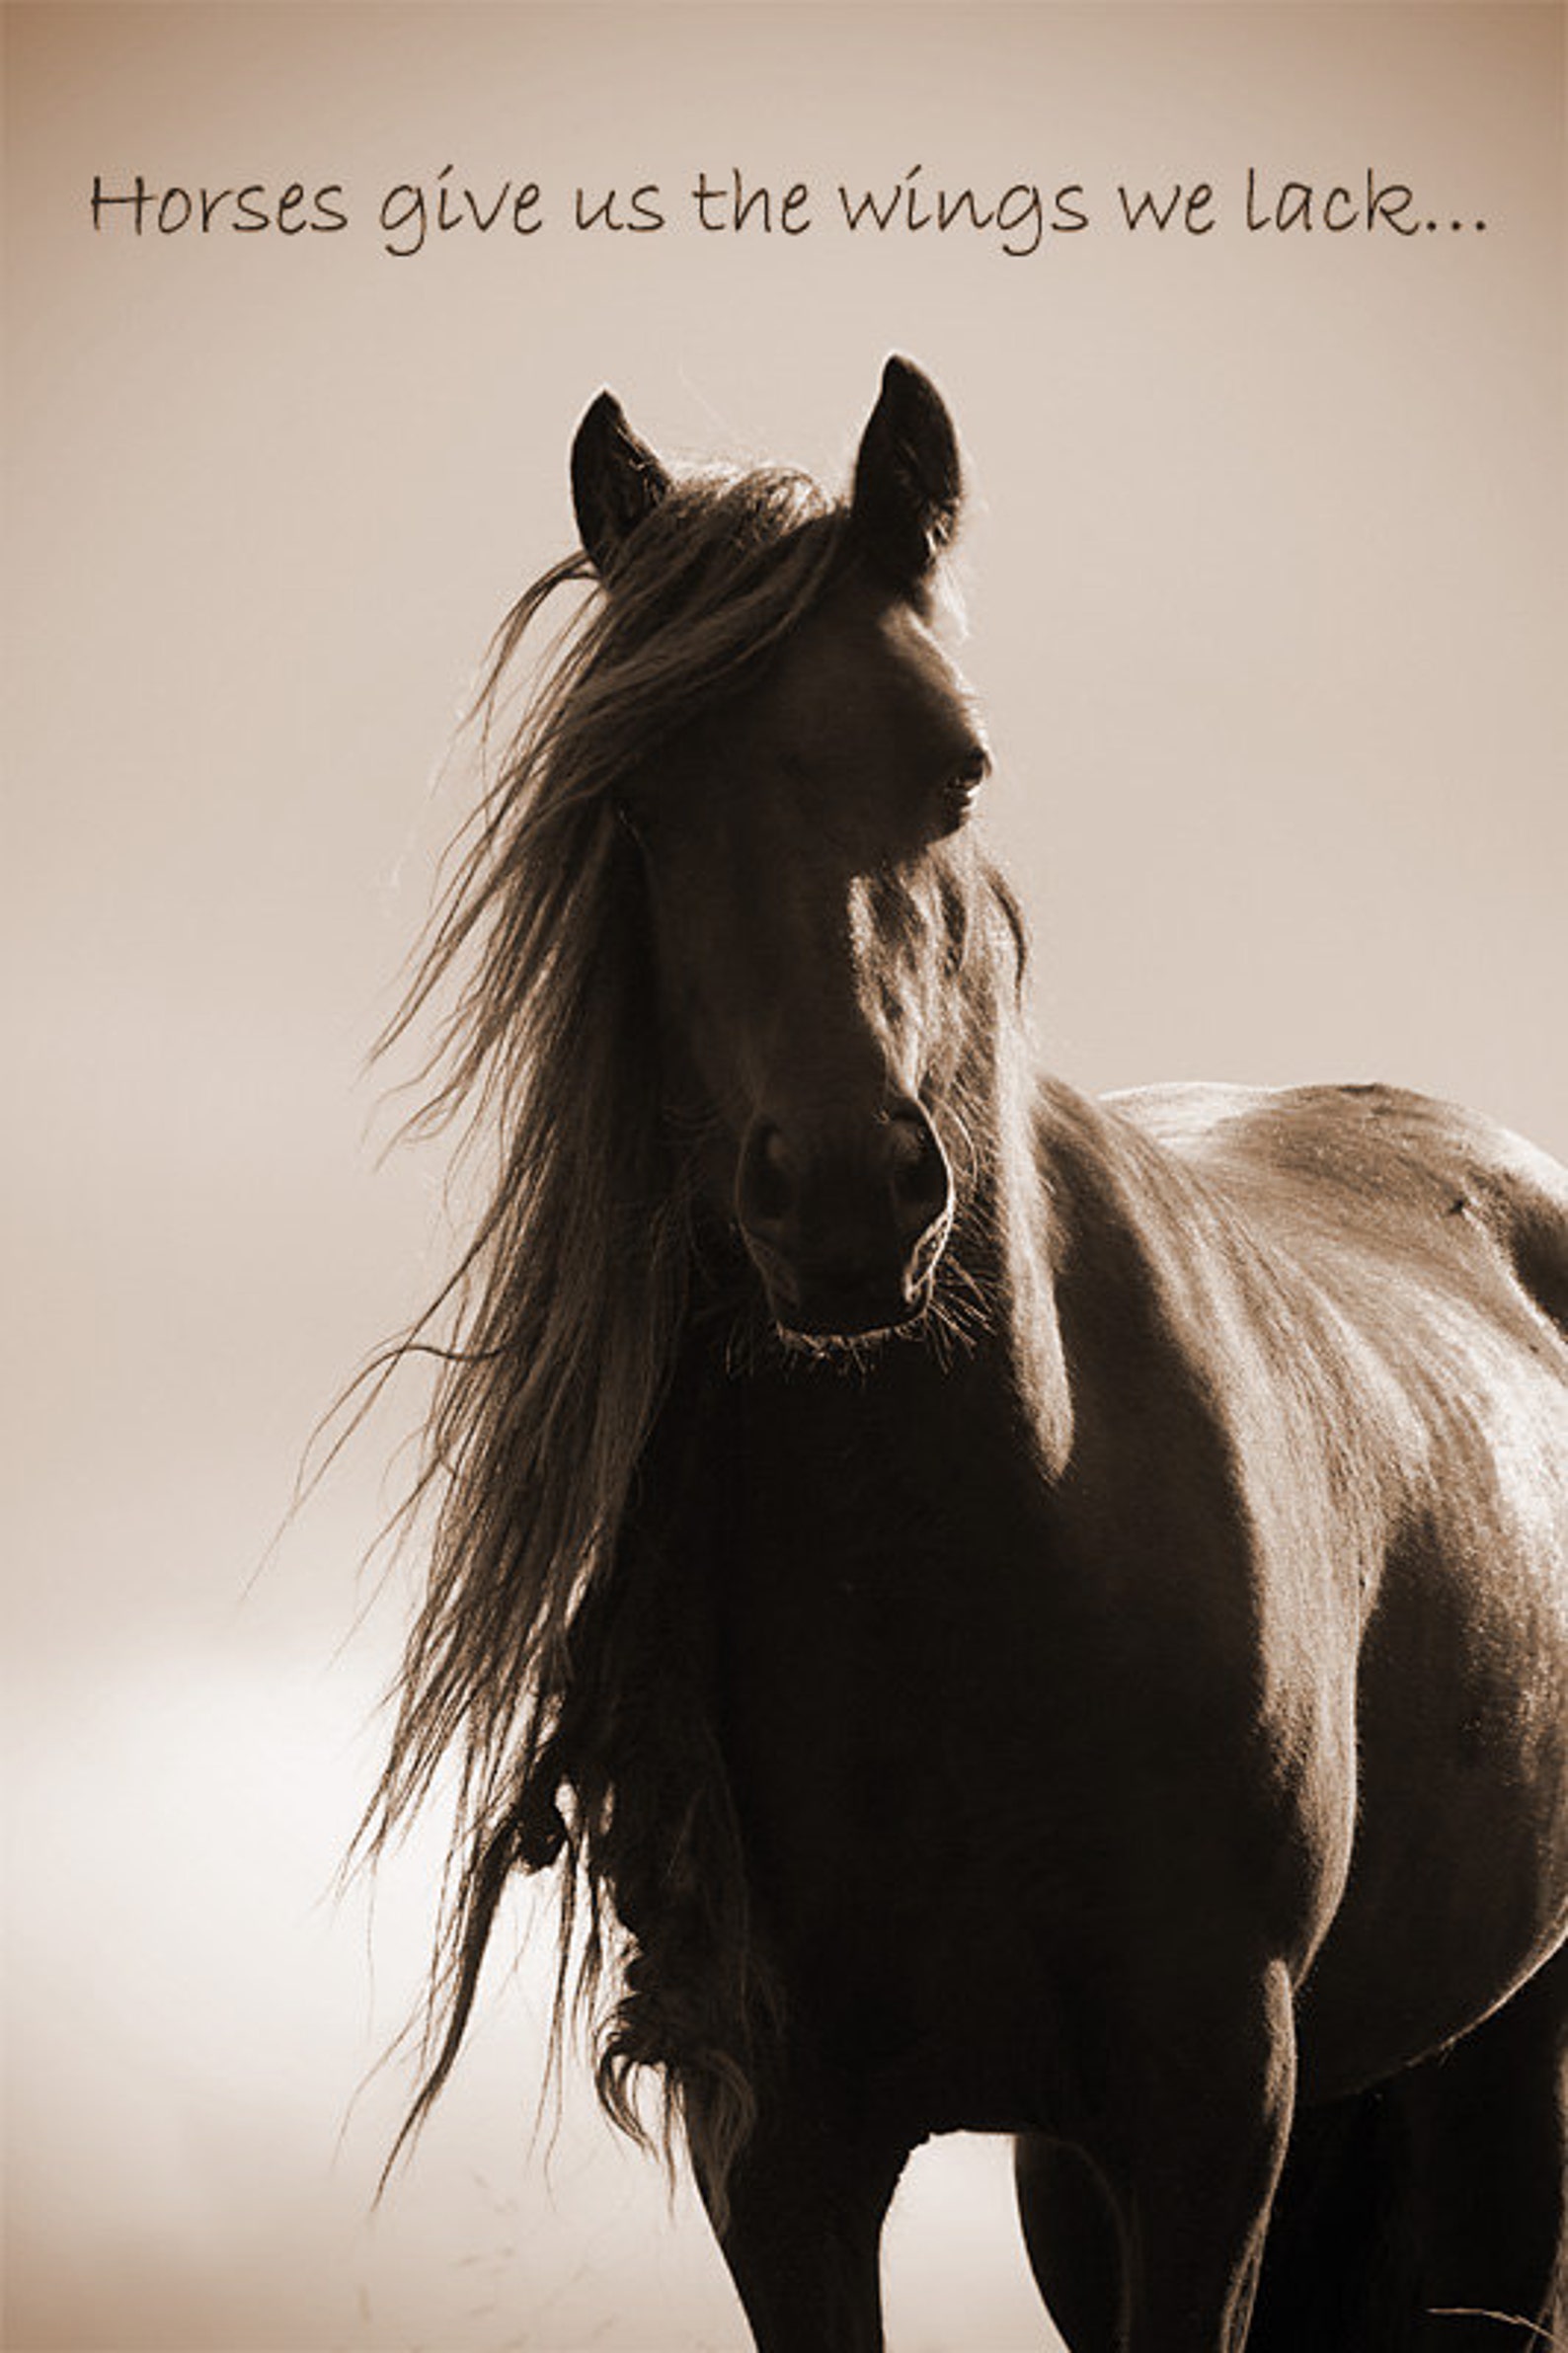 Обложка лошади. Красивые лошади. Картинки лошадей. Картинки на рабочий стол лошади. Профессиональные фотографии лошадей.